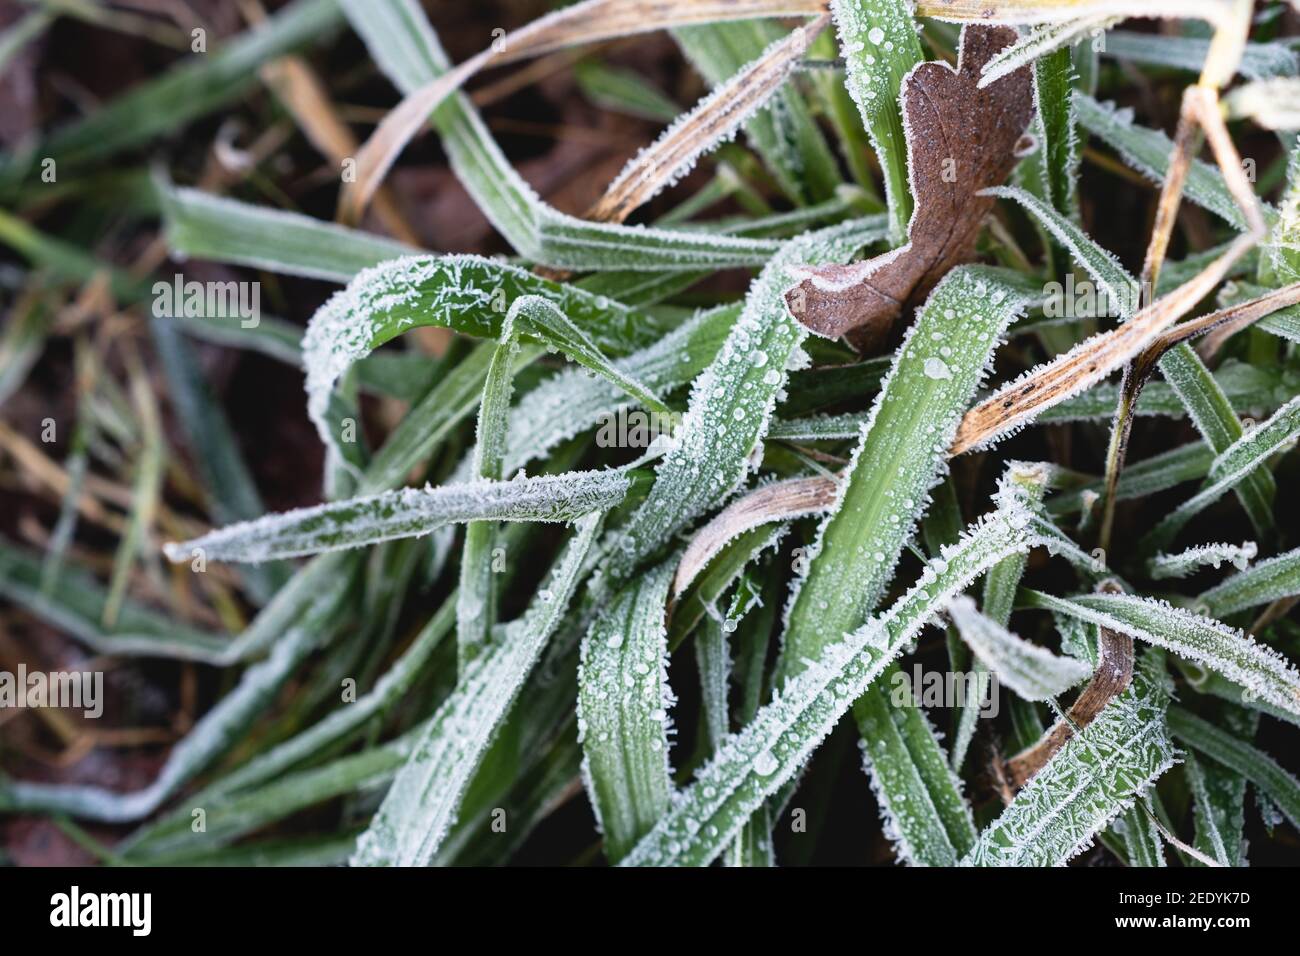 Journée froide dans la forêt avec des feuilles vertes sur le sol. Feuilles vertes couvertes de glace. Banque D'Images